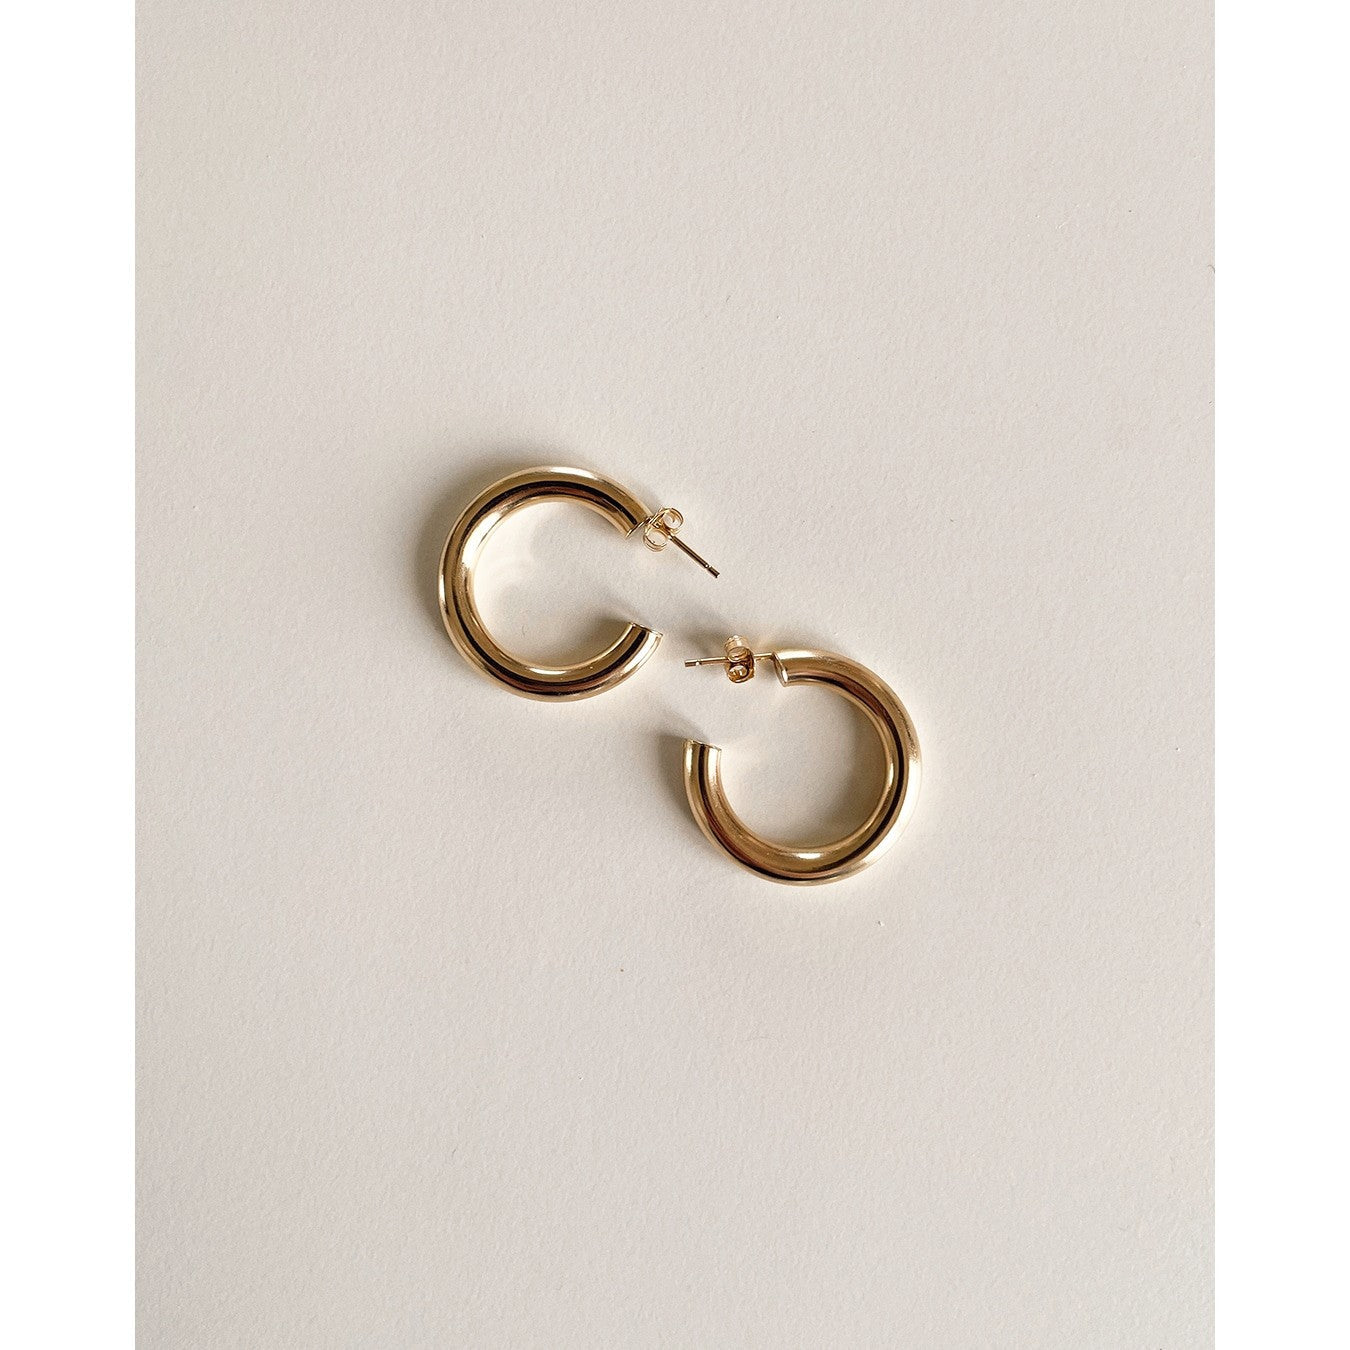 Are Hoop Earrings In Style? - Alexis Jae Jewelry